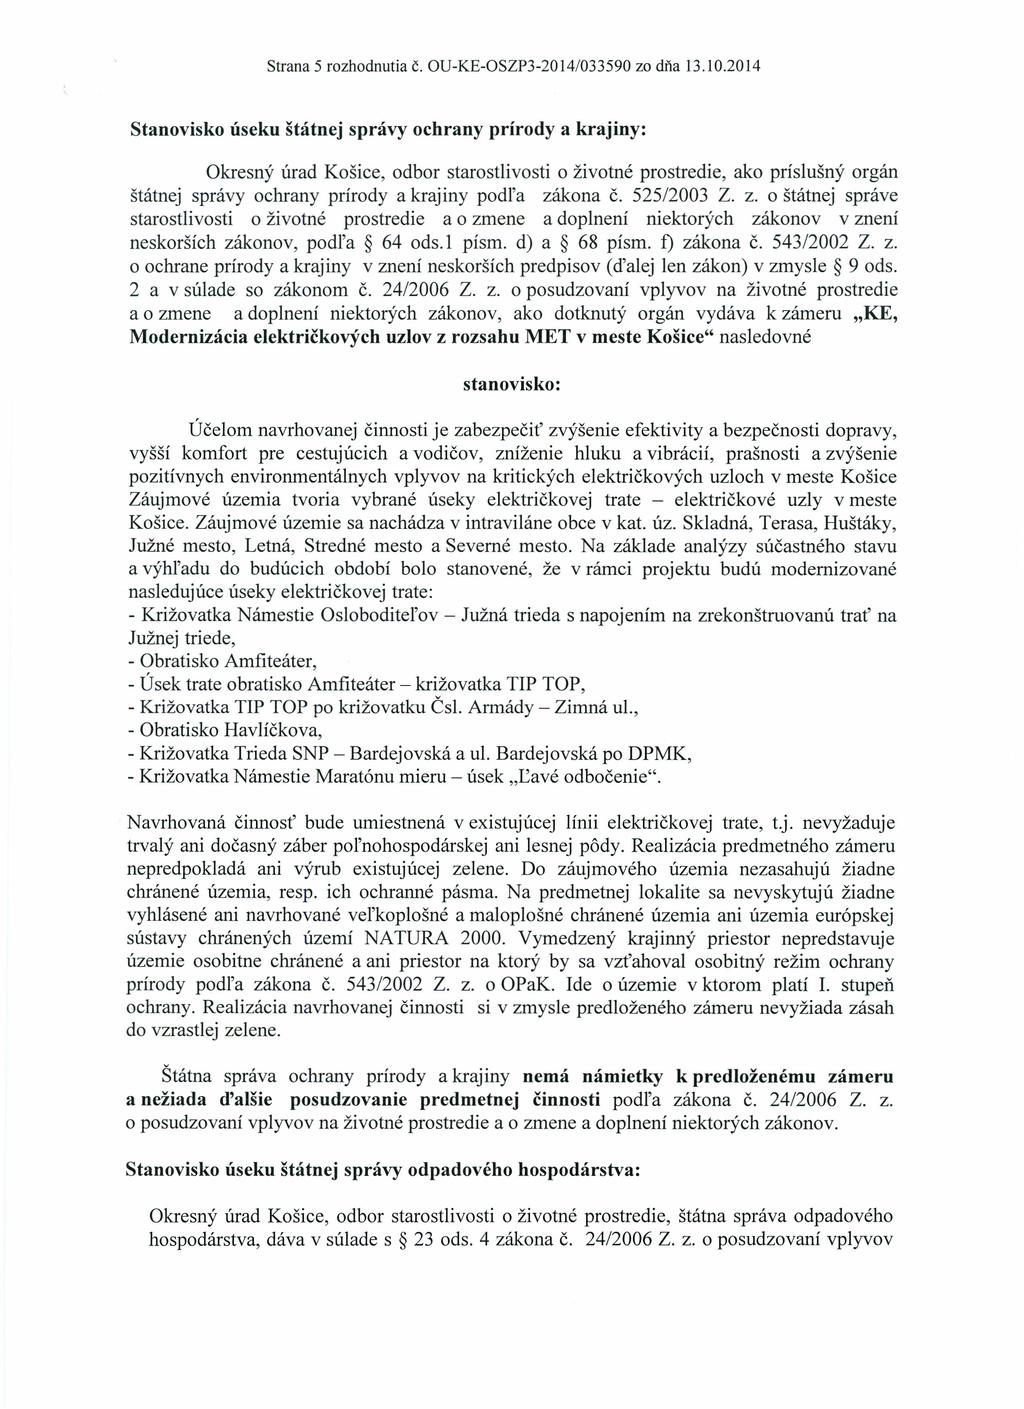 Strana 5 rozhodnutia Č. OU-KE-OSZP3-2014/033590 za dňa 13.10.